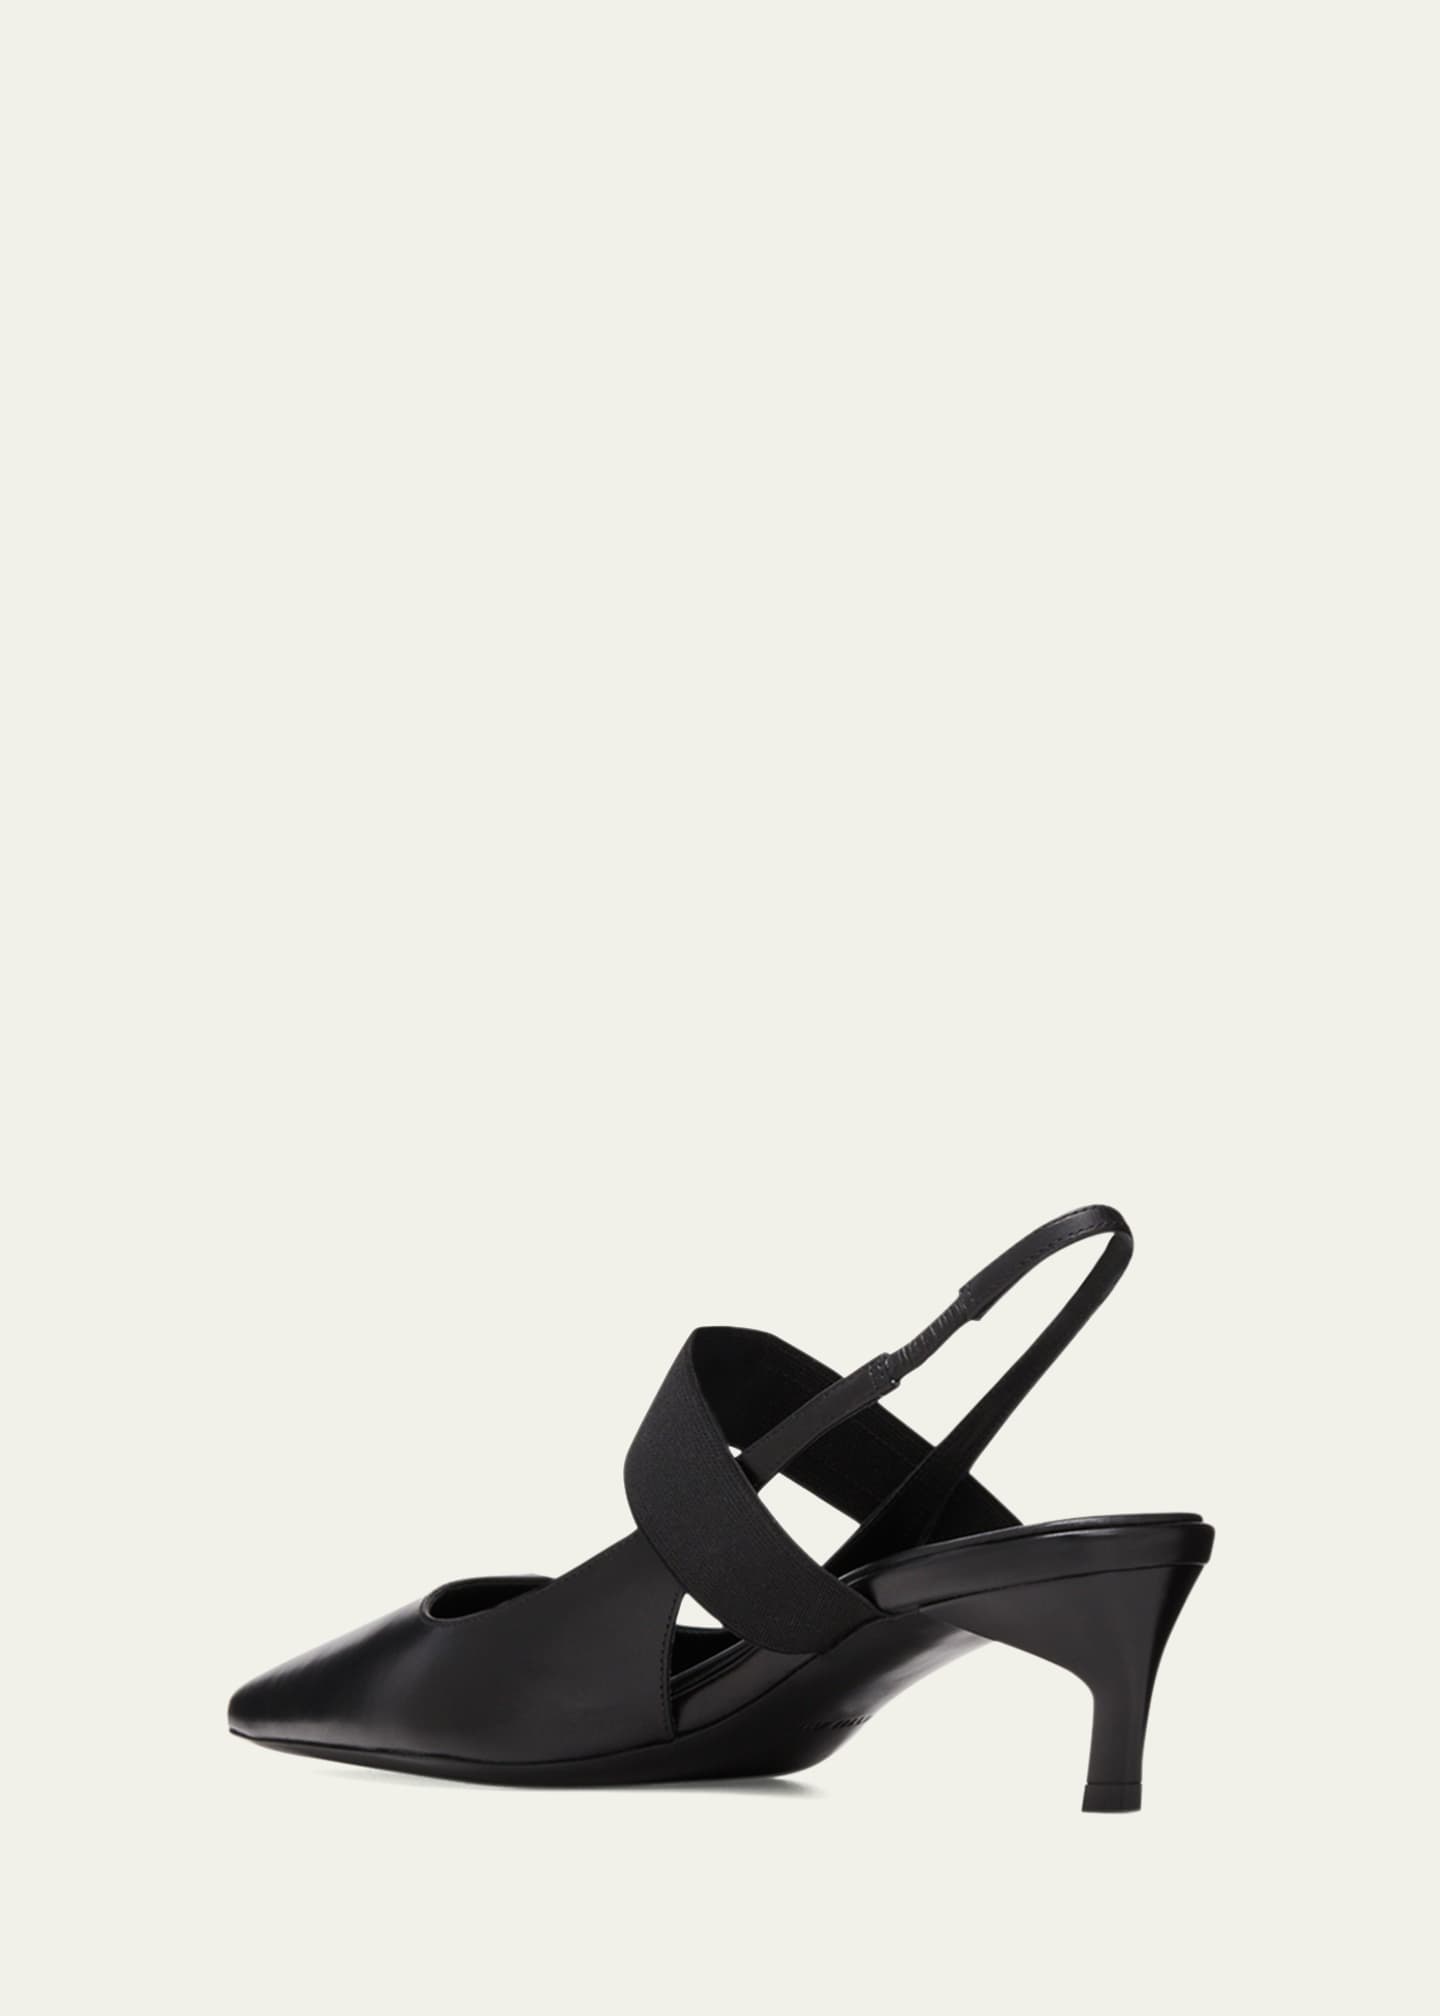 Bergdorf Goodman Suede Pumps - Black Pumps, Shoes - WBG23824